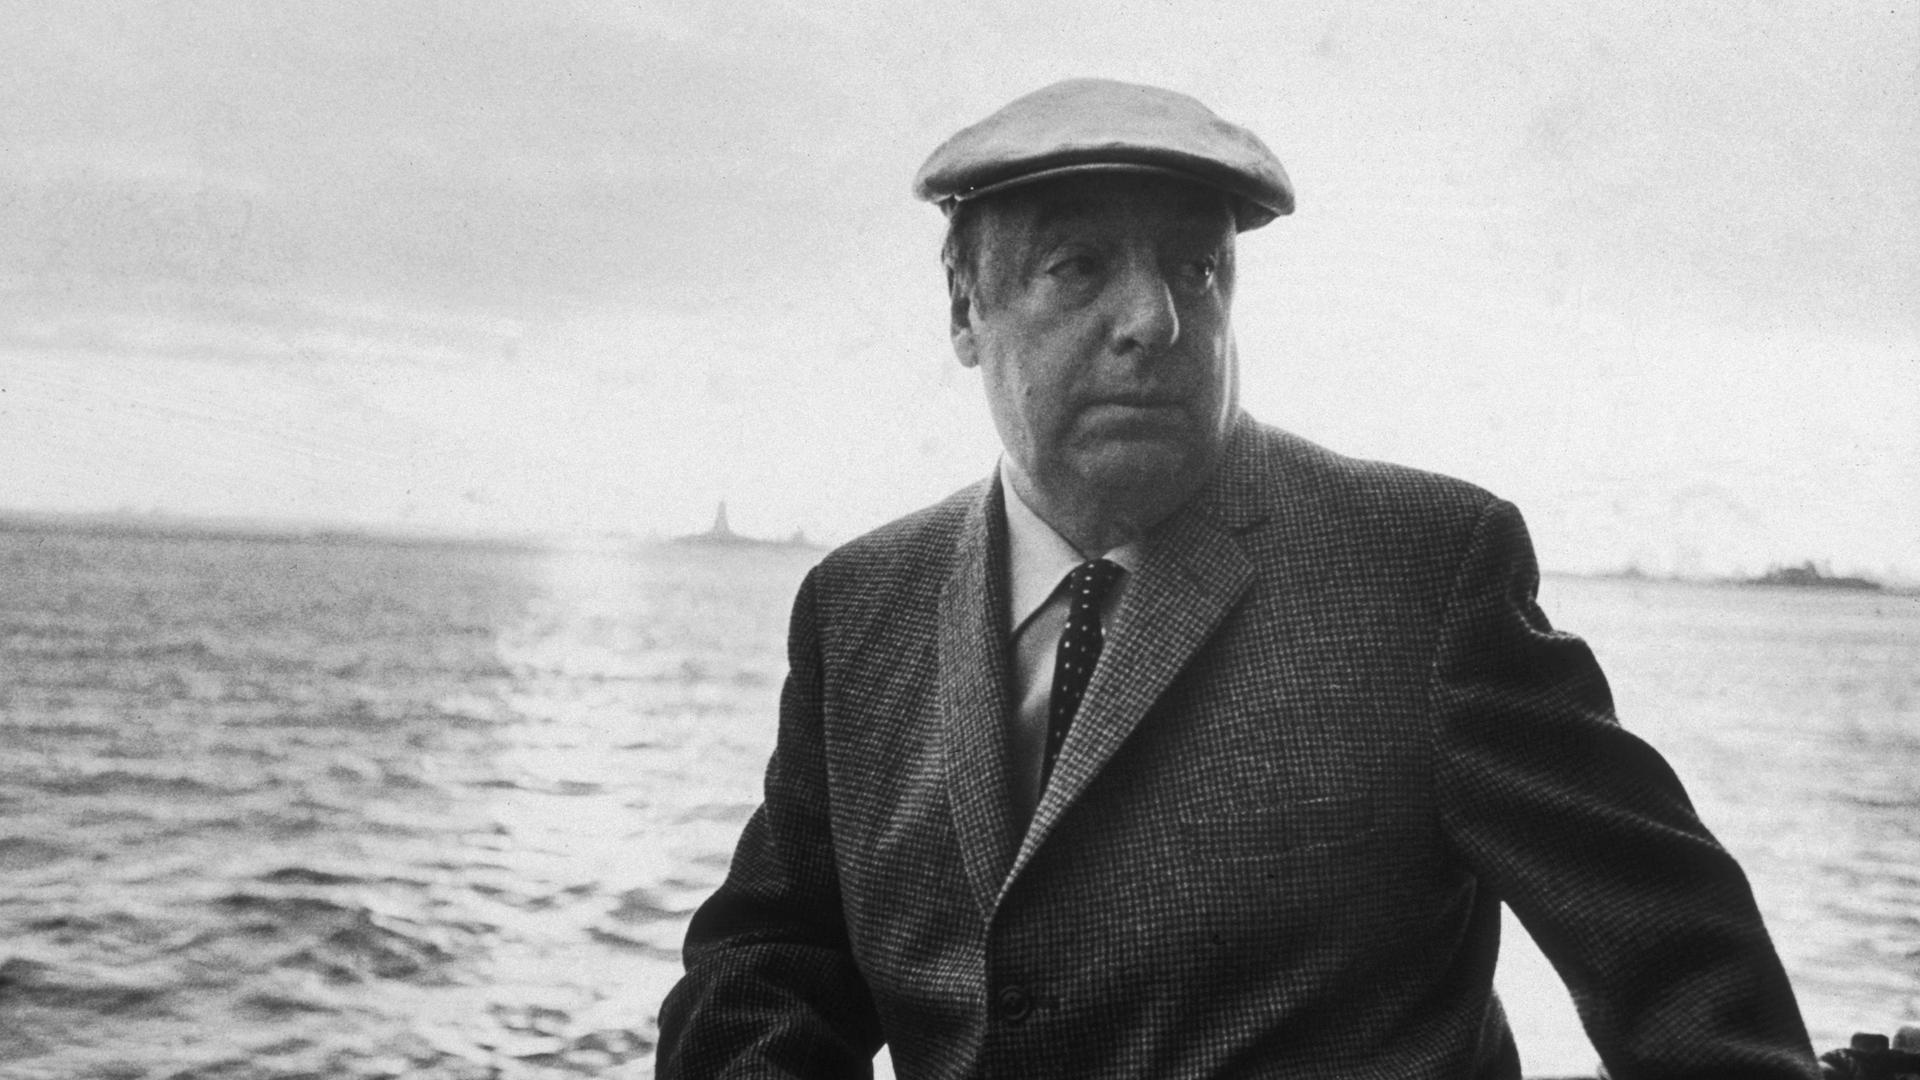 Der chilenische Dichter Pablo Neruda (1904 - 1973) lehnt an der Reling eines Schiffes. Er trägt eine Mütze. 